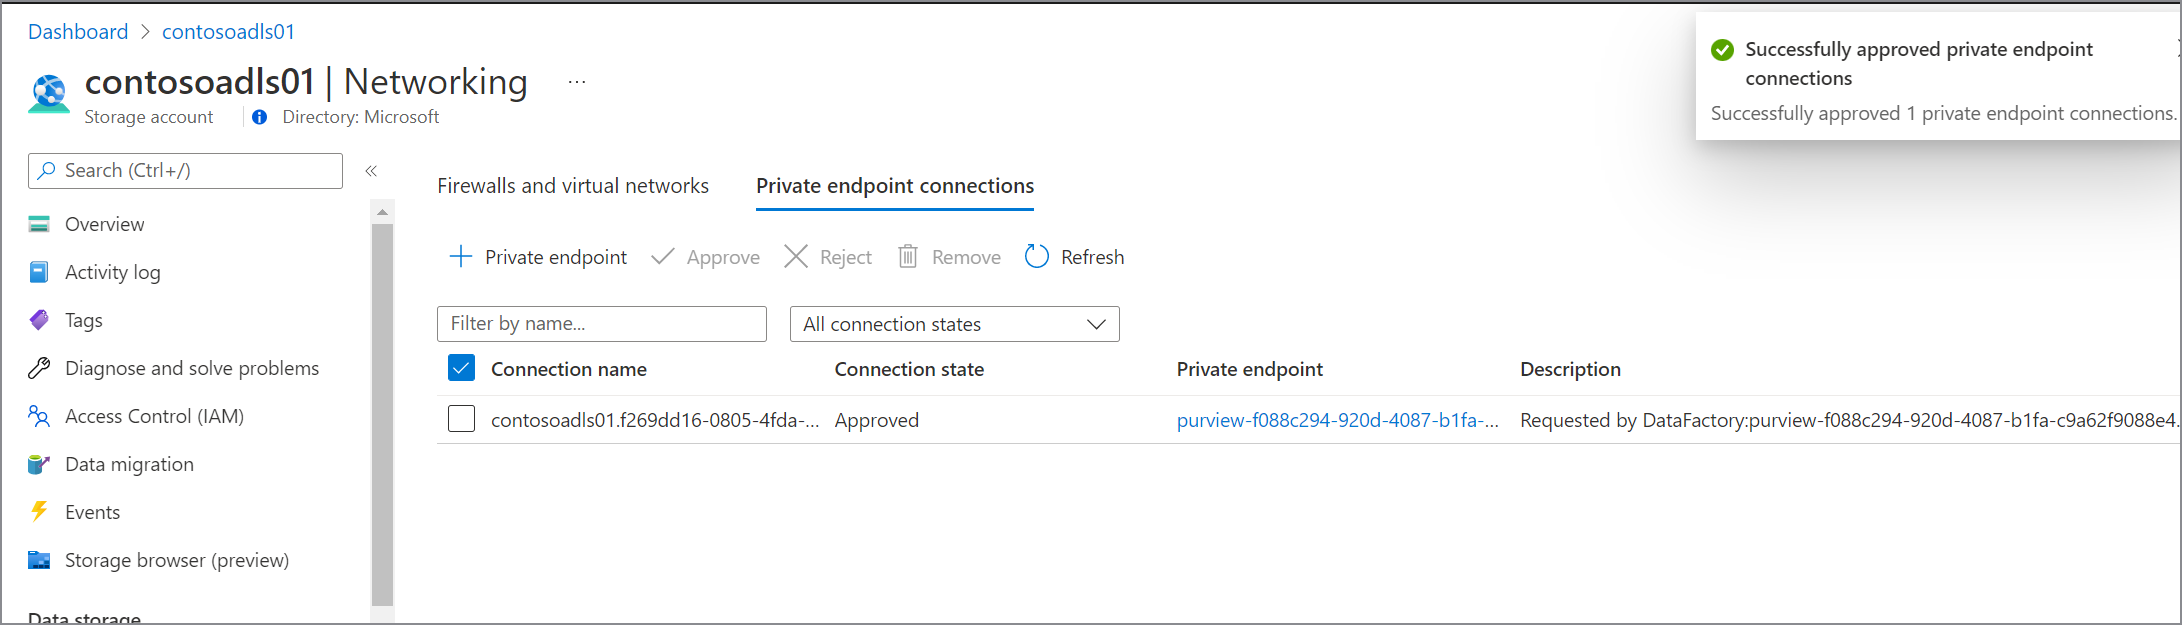 Captura de pantalla que muestra el punto de conexión privado aprobado para orígenes de datos en Azure Portal